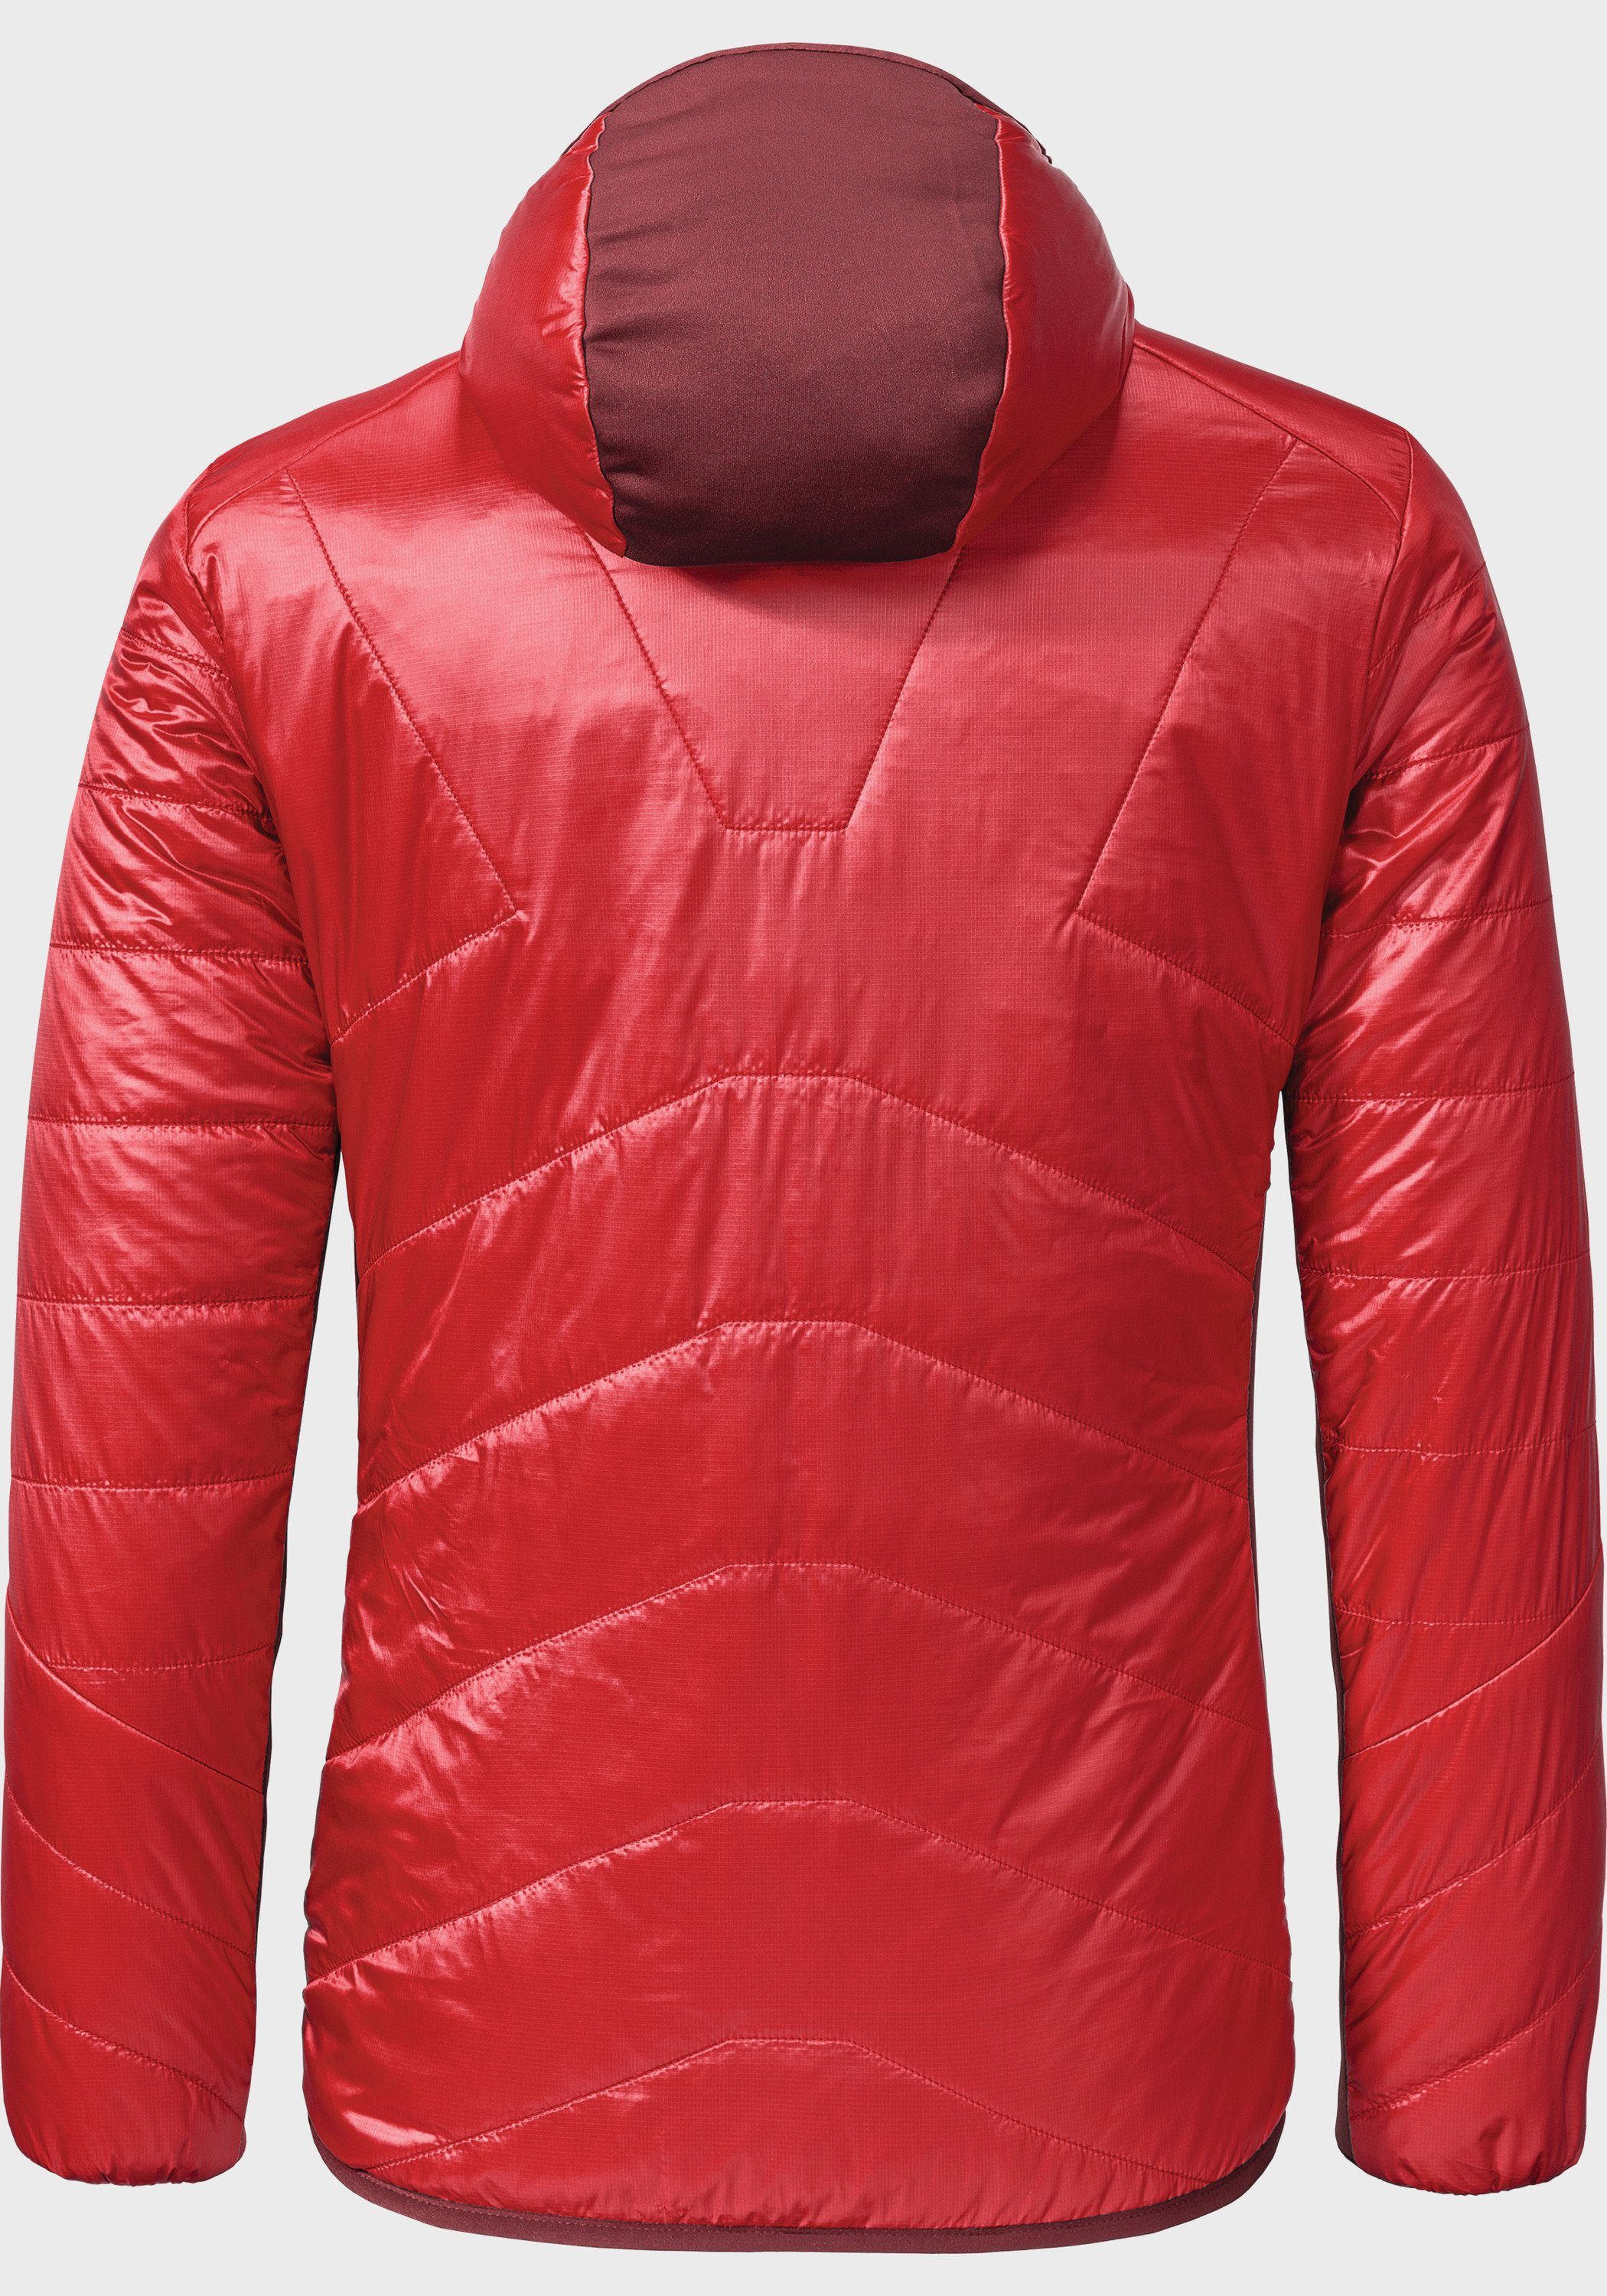 Stams Jacket Outdoorjacke rot L Hybrid Schöffel